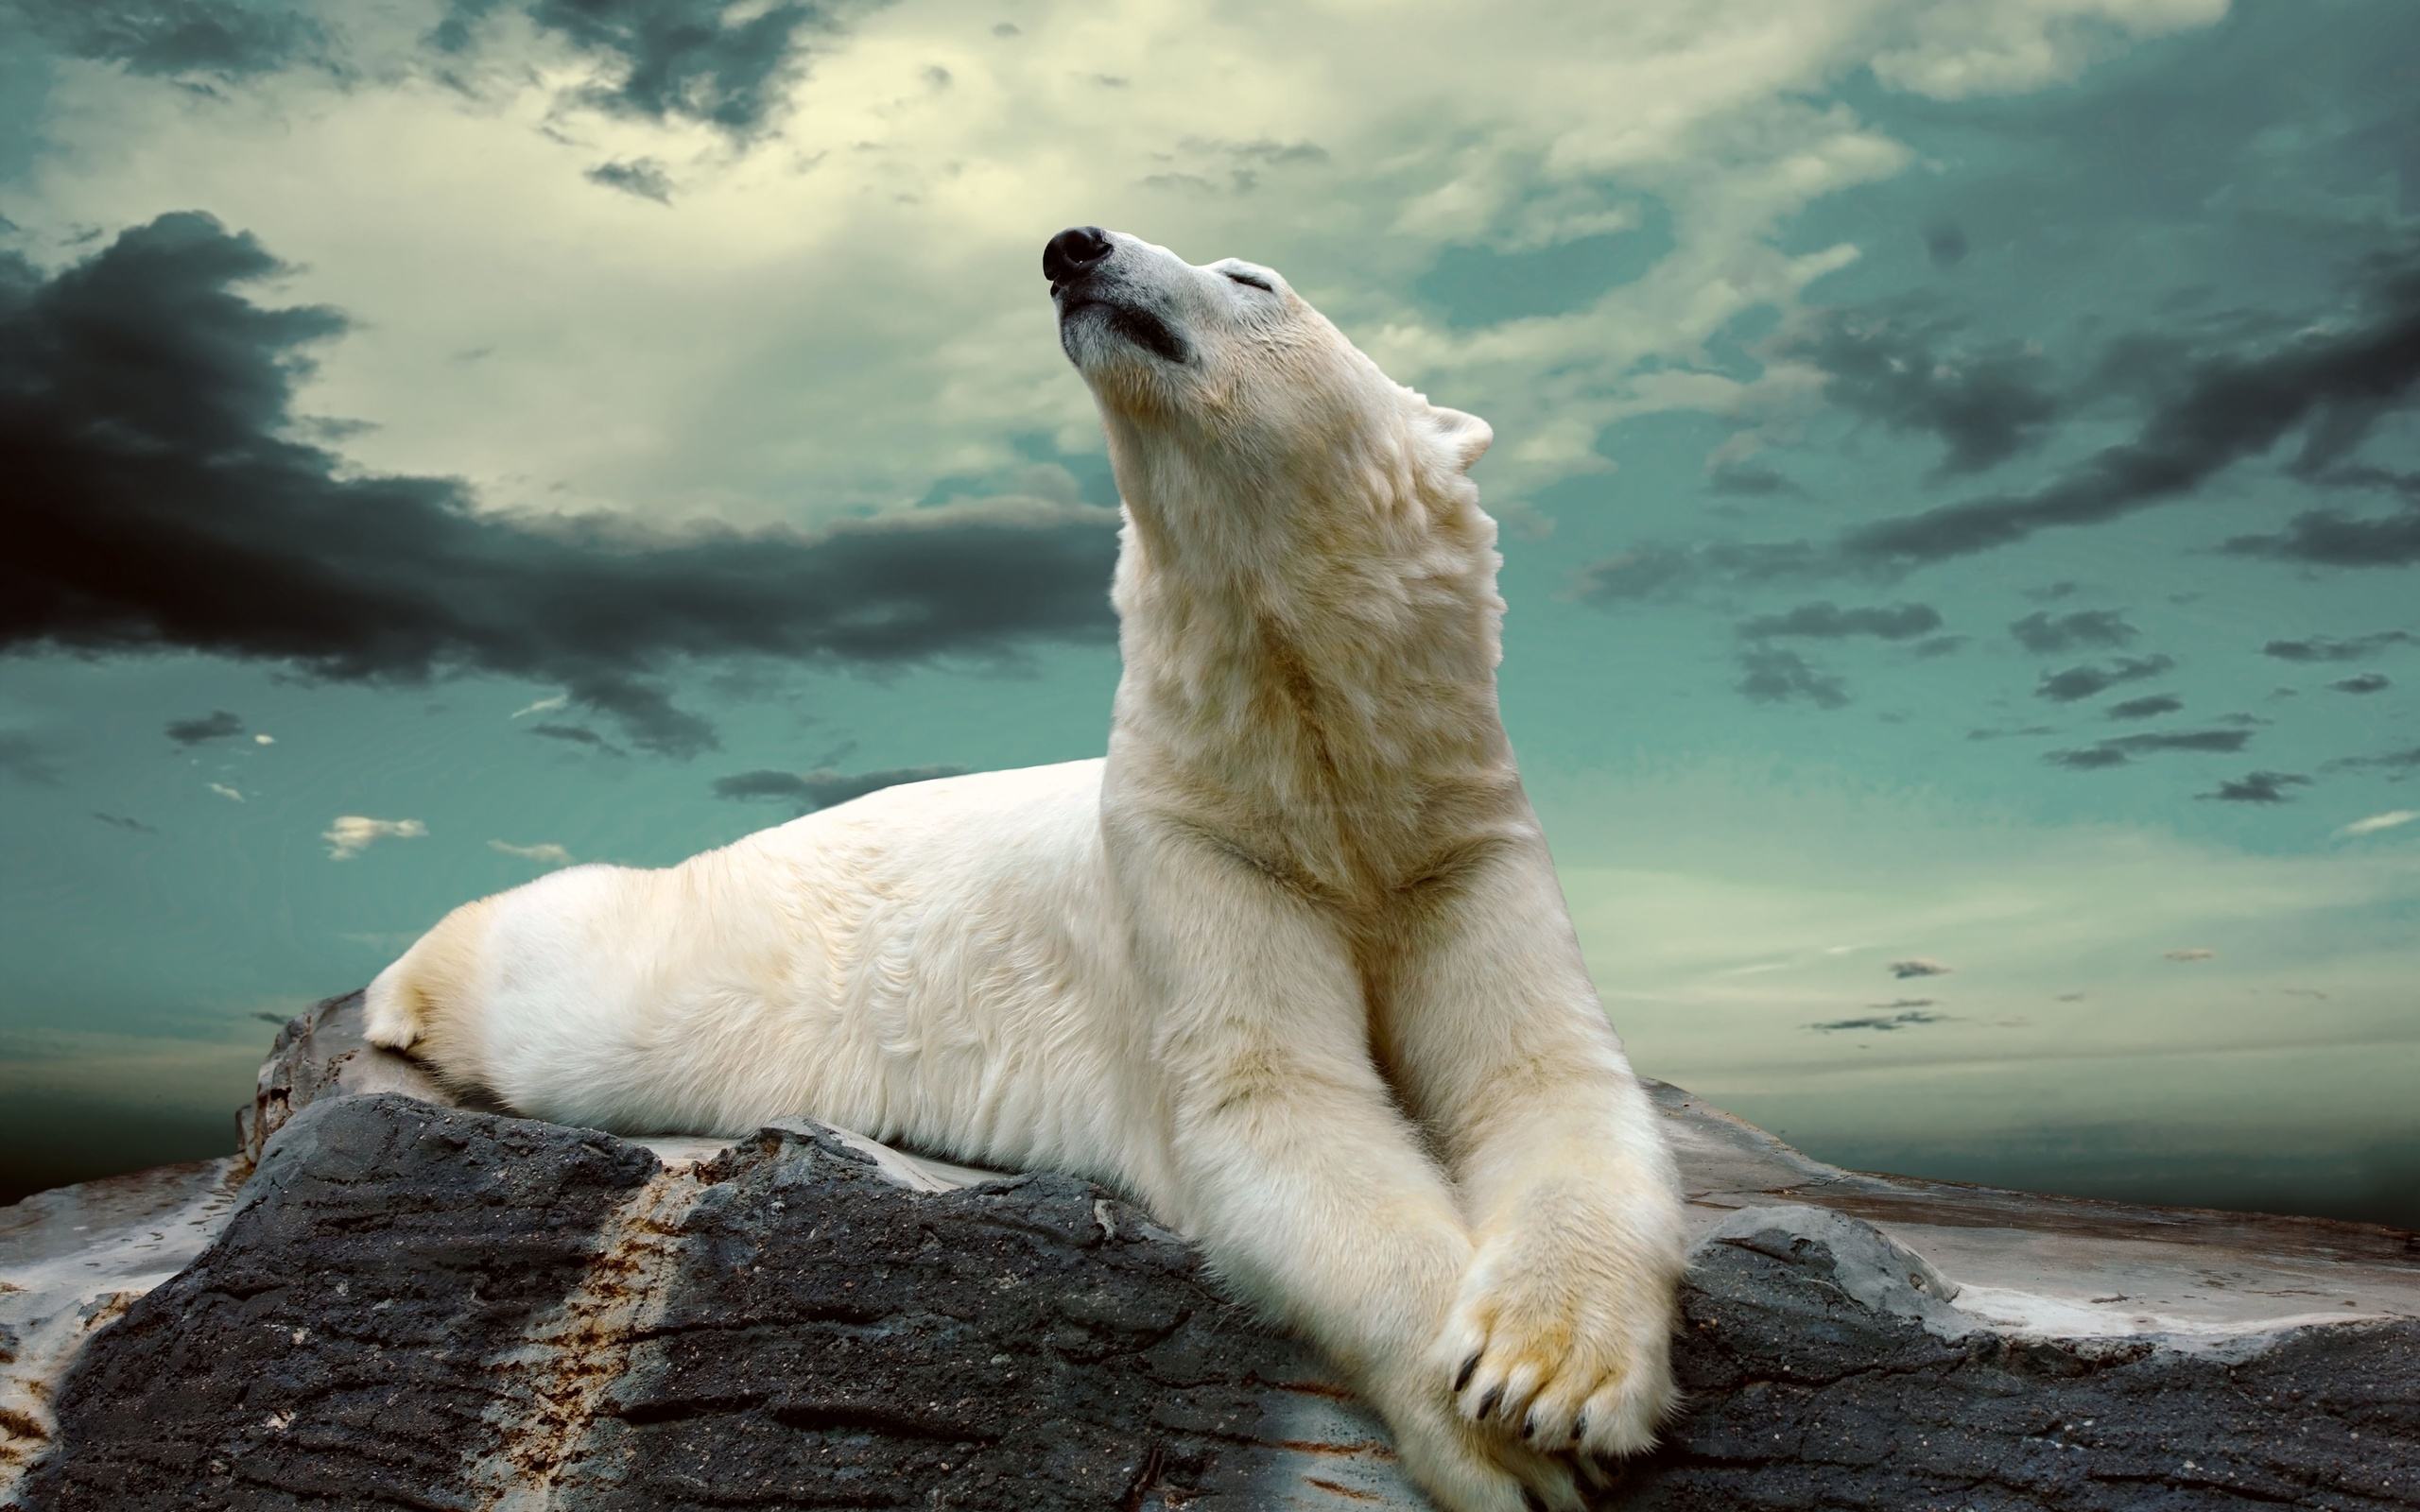 Gấu bắc cực: Hãy cùng chiêm ngưỡng vẻ đẹp hoang sơ của gấu bắc cực, loài động vật cao nguyên sống trong điều kiện khắc nghiệt nhưng lại rất đáng yêu và dễ thương.